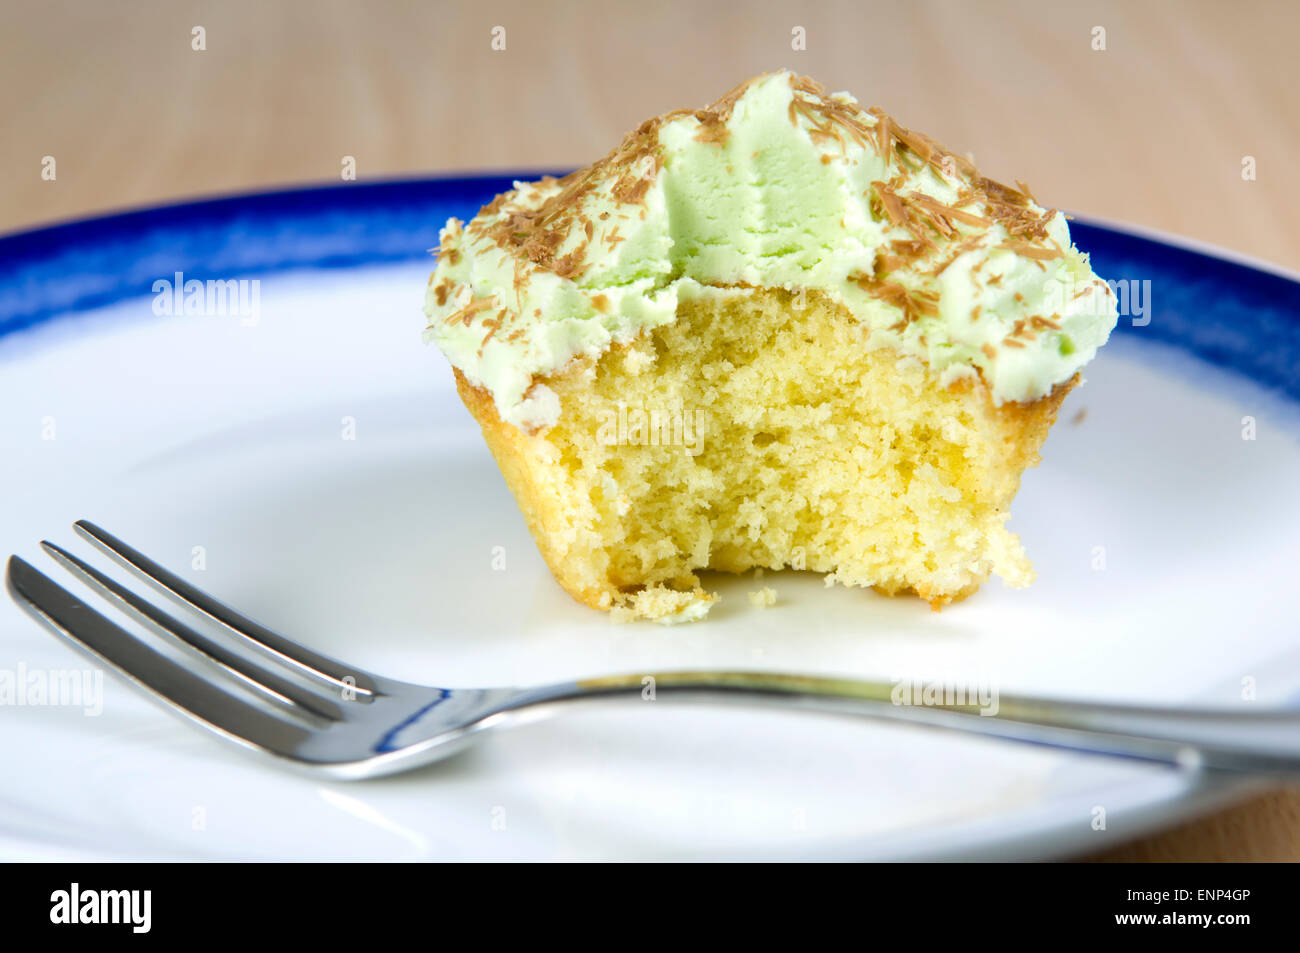 Cupcake pistache avec des copeaux de chocolat, glaçage vert et une collation prise hors de, sur une plaque bleu et blanc Banque D'Images